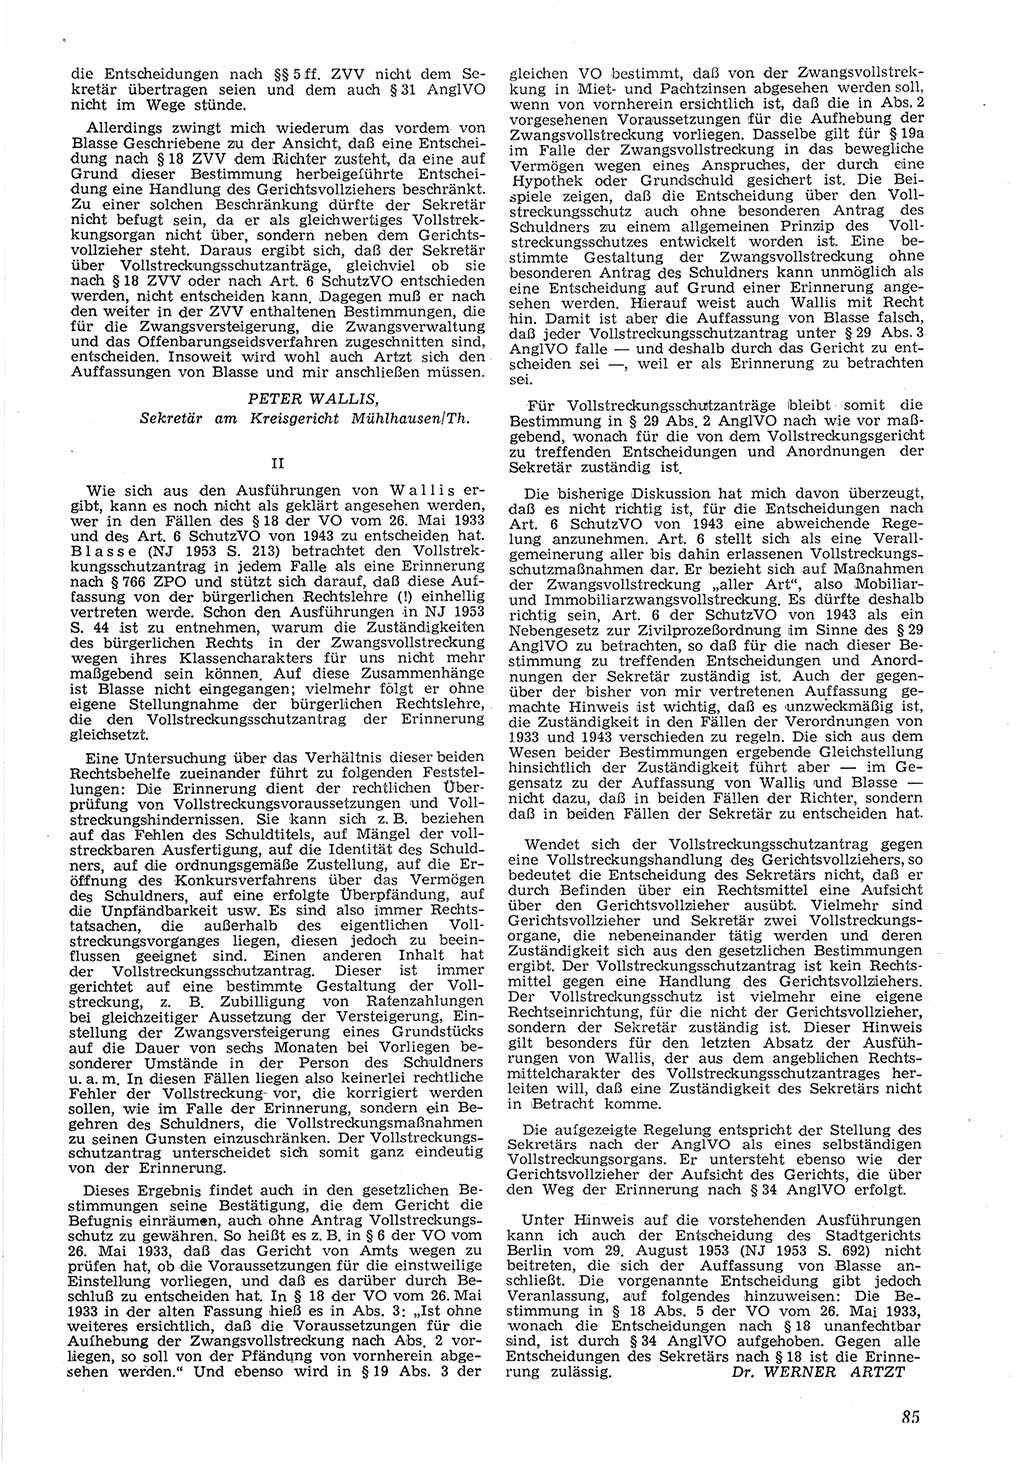 Neue Justiz (NJ), Zeitschrift für Recht und Rechtswissenschaft [Deutsche Demokratische Republik (DDR)], 8. Jahrgang 1954, Seite 85 (NJ DDR 1954, S. 85)